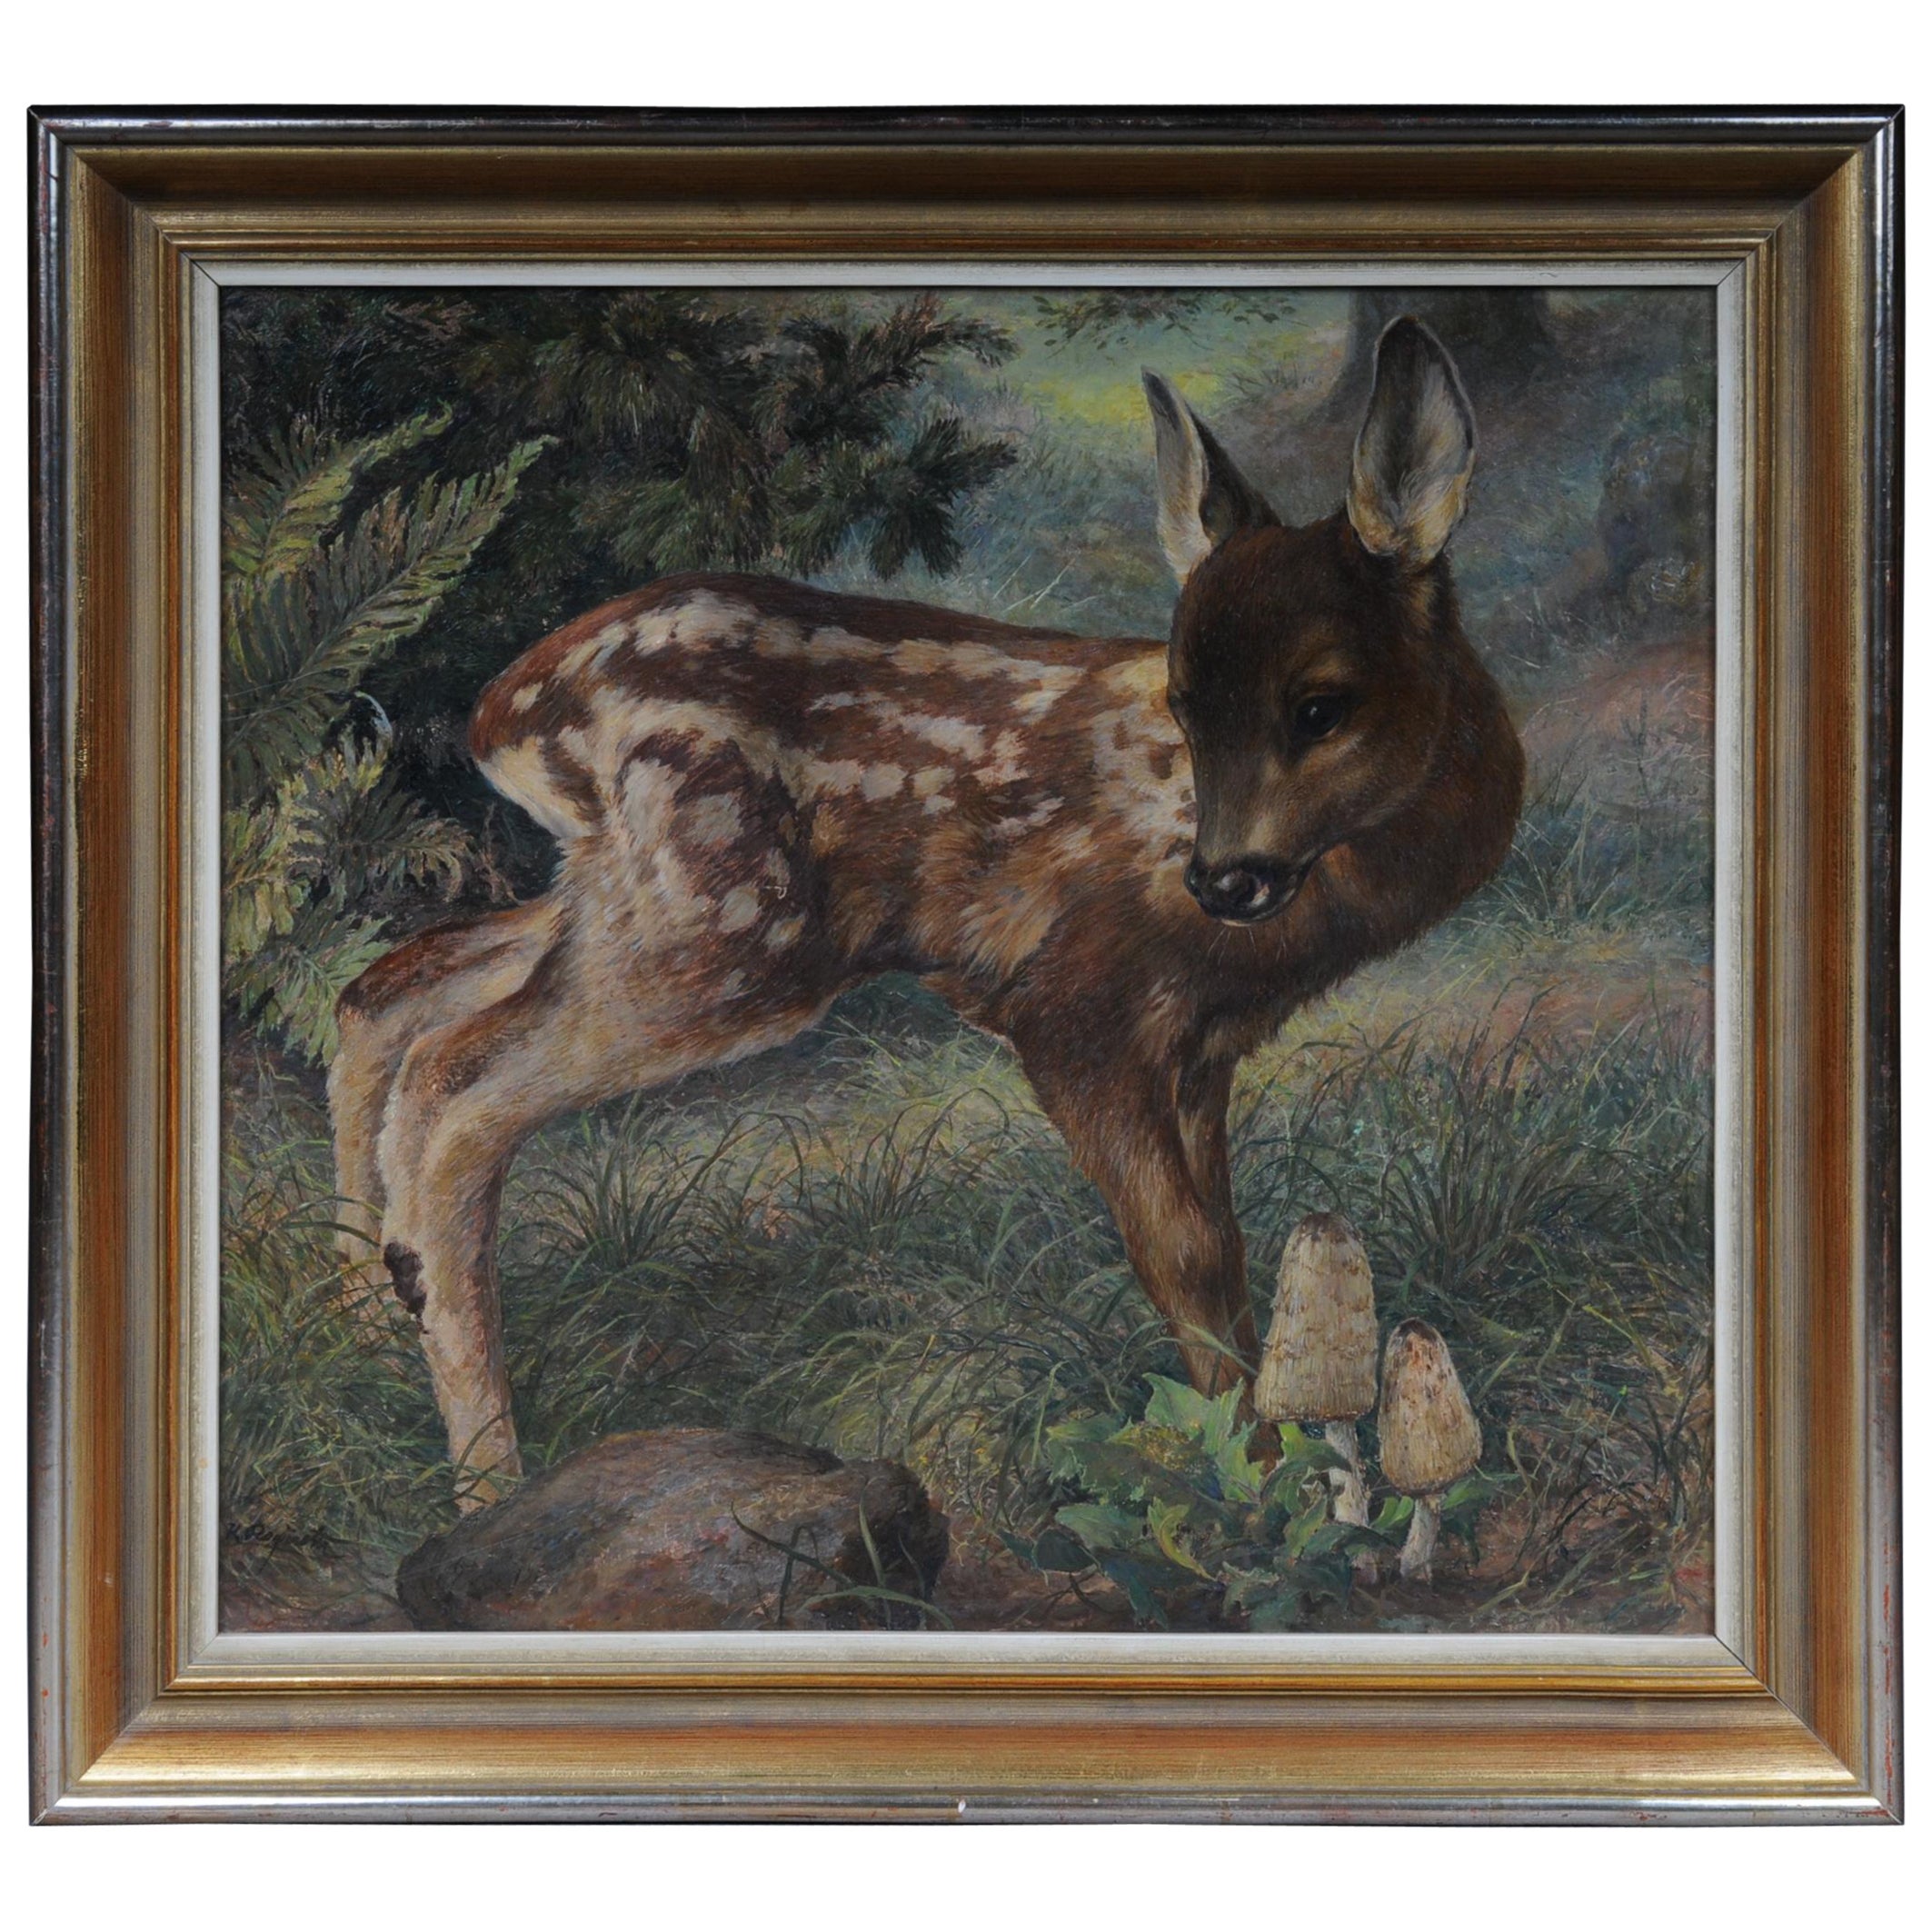 Magnifique peinture à l'huile sur toile, signée K. Roquette, XXe siècle